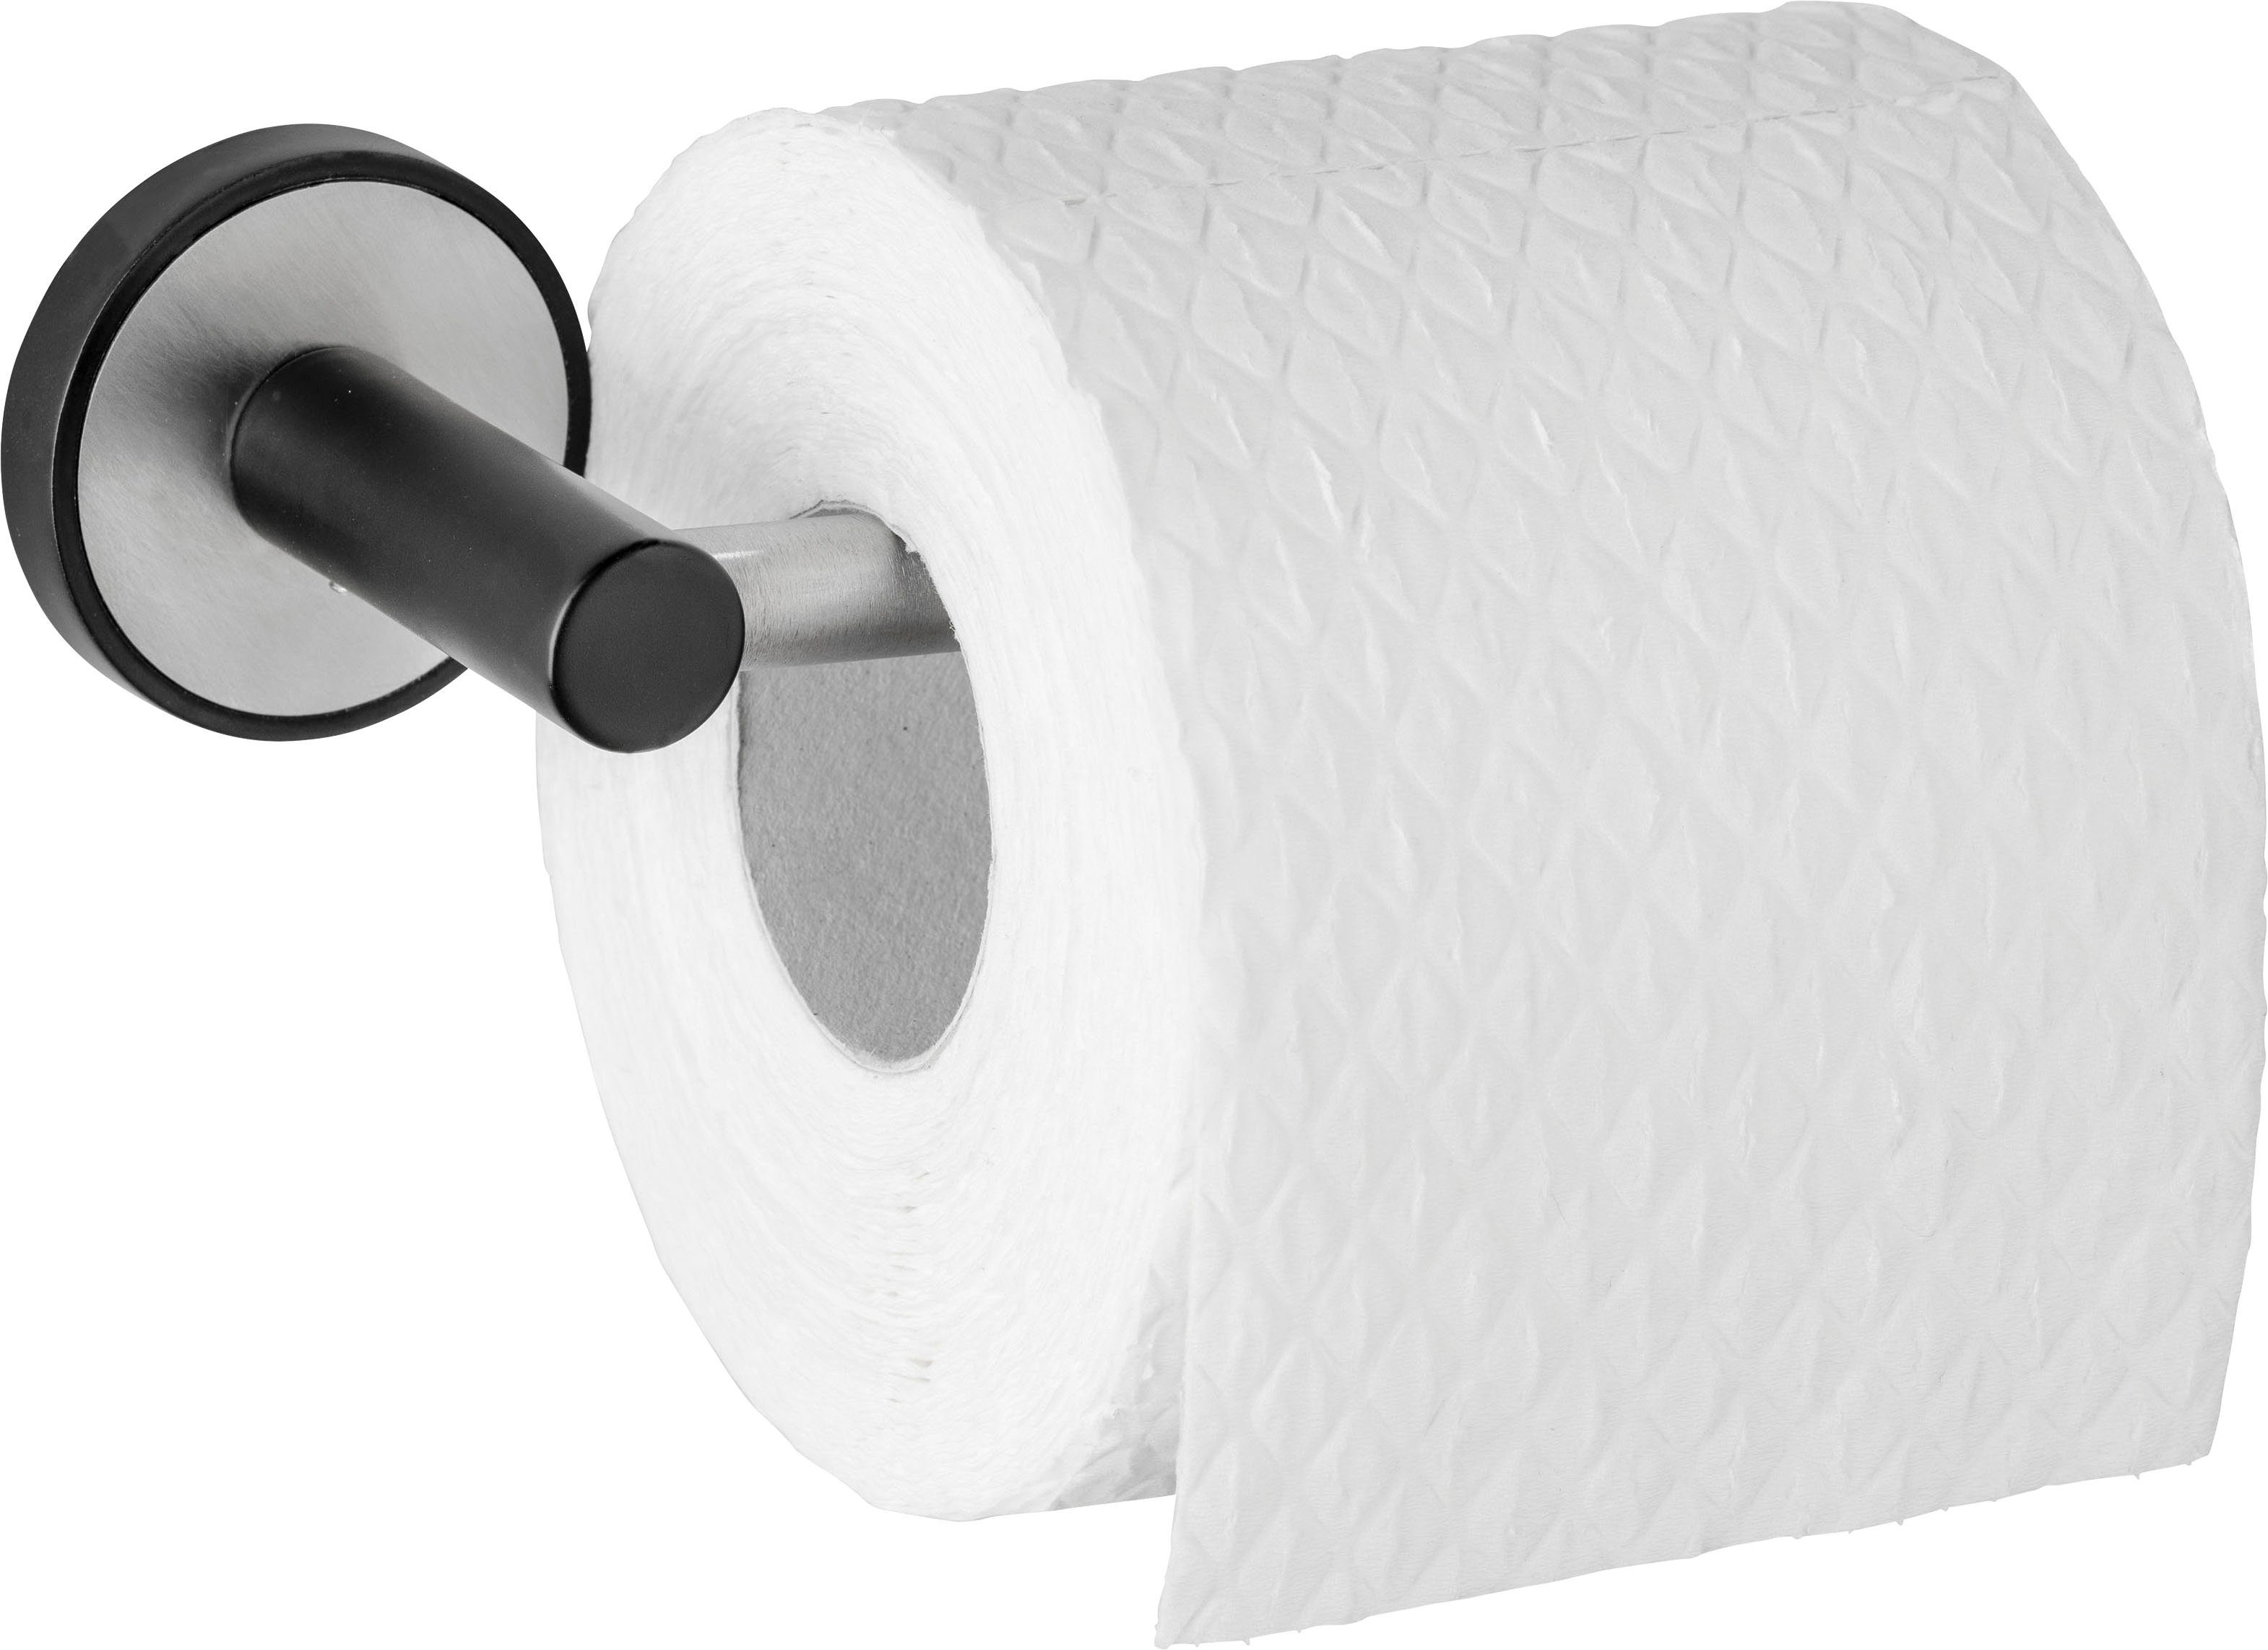 UV-Loc® Toilettenpapierhalter Bohren Befestigen ohne WENKO Udine,